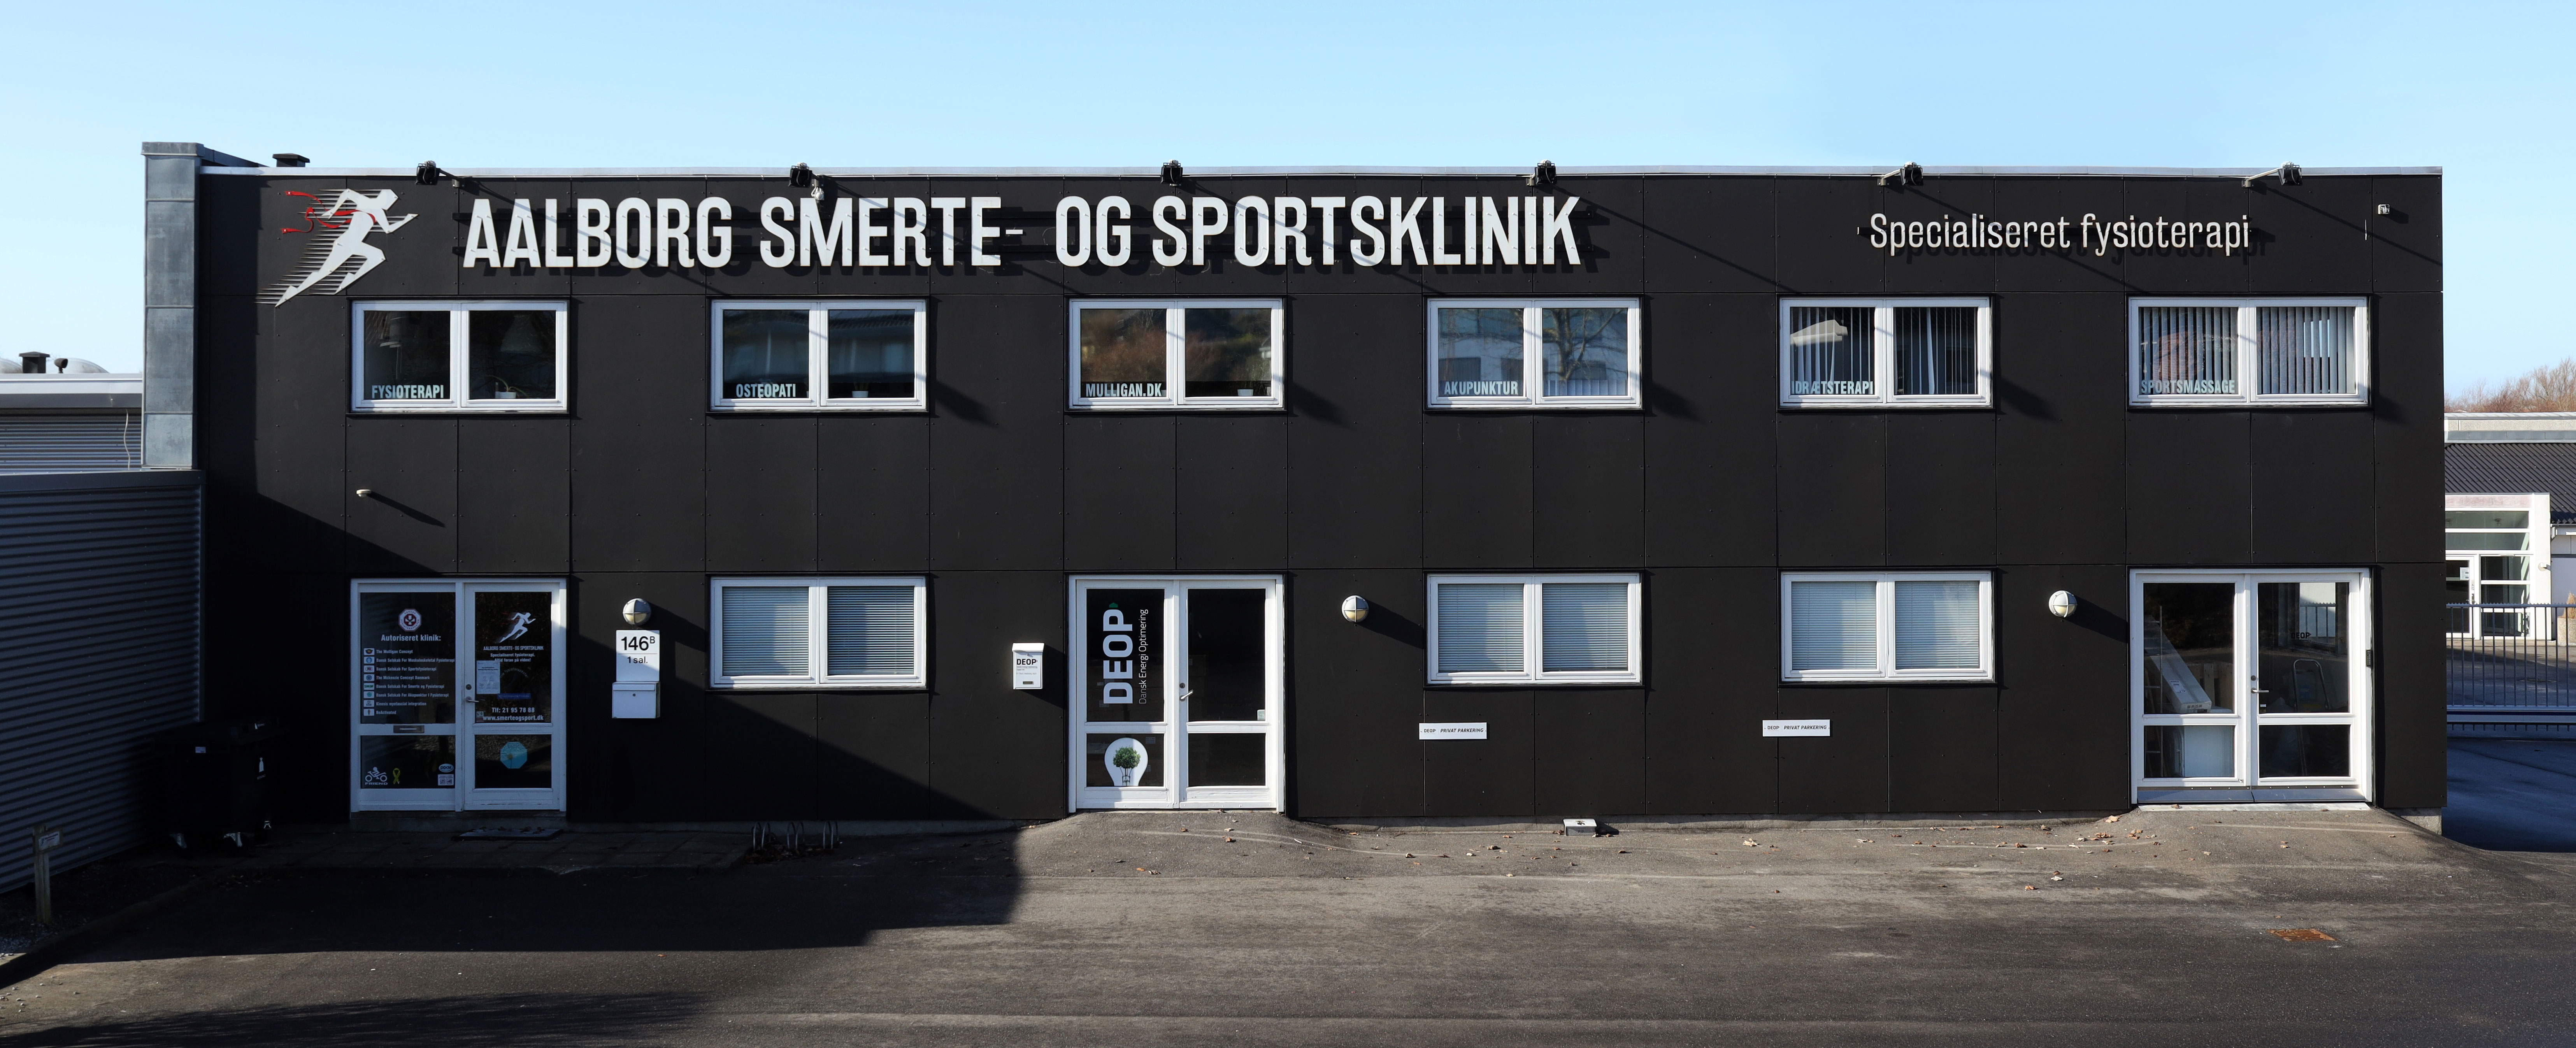 aalborg-smerte-og-sport-bygning-4